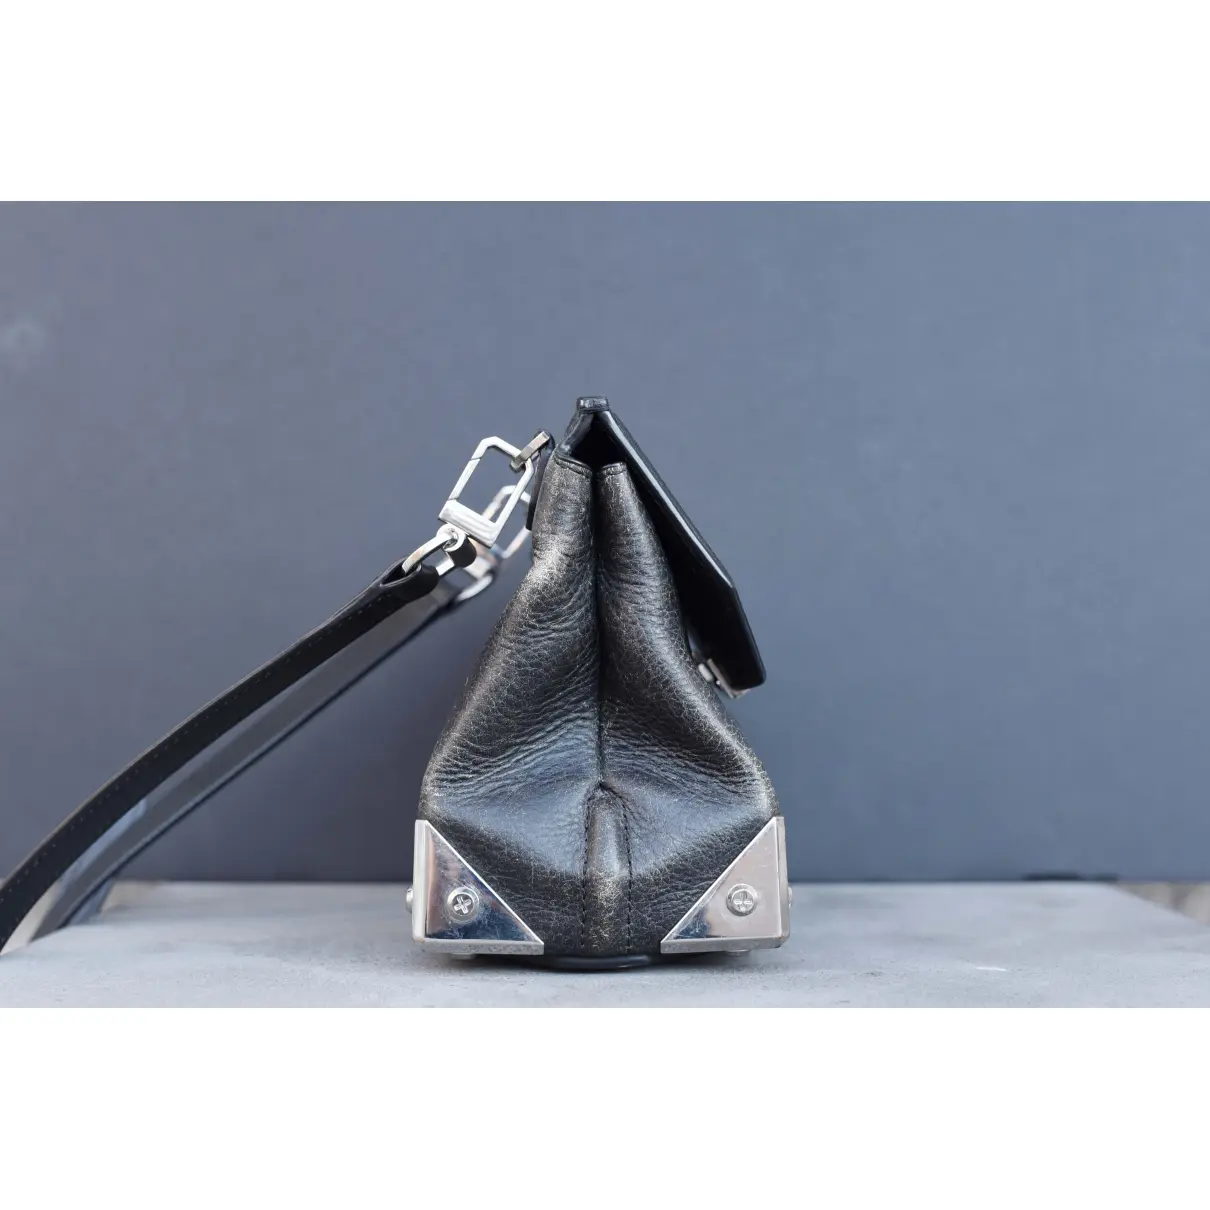 Prisma leather handbag Alexander Wang